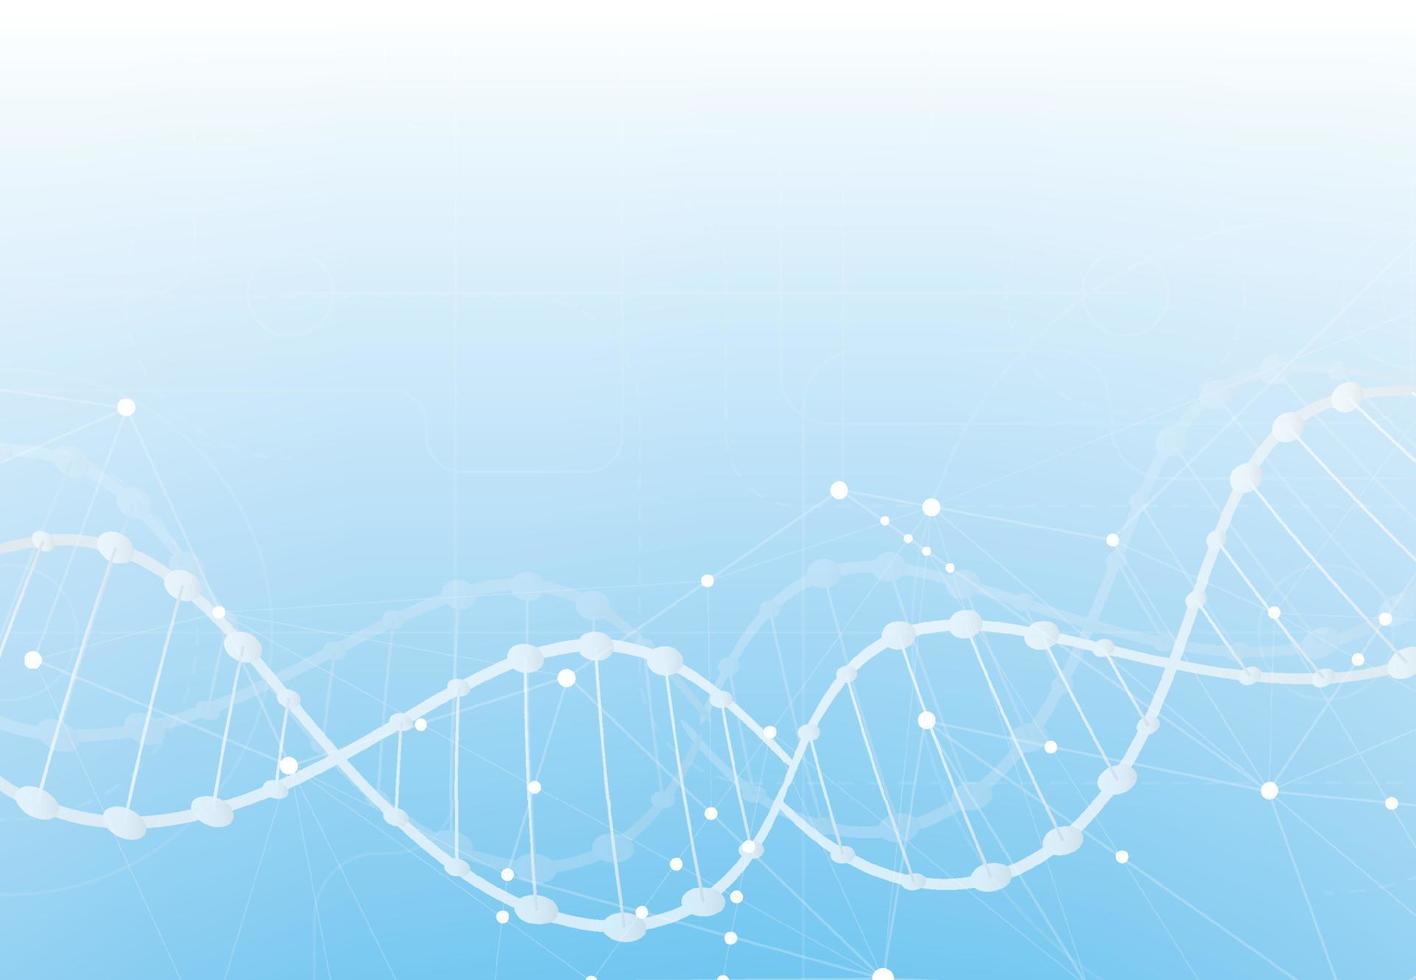 concetto di DNA. modello scientifico, carta da parati o banner con design di molecole. illustrazione vettoriale